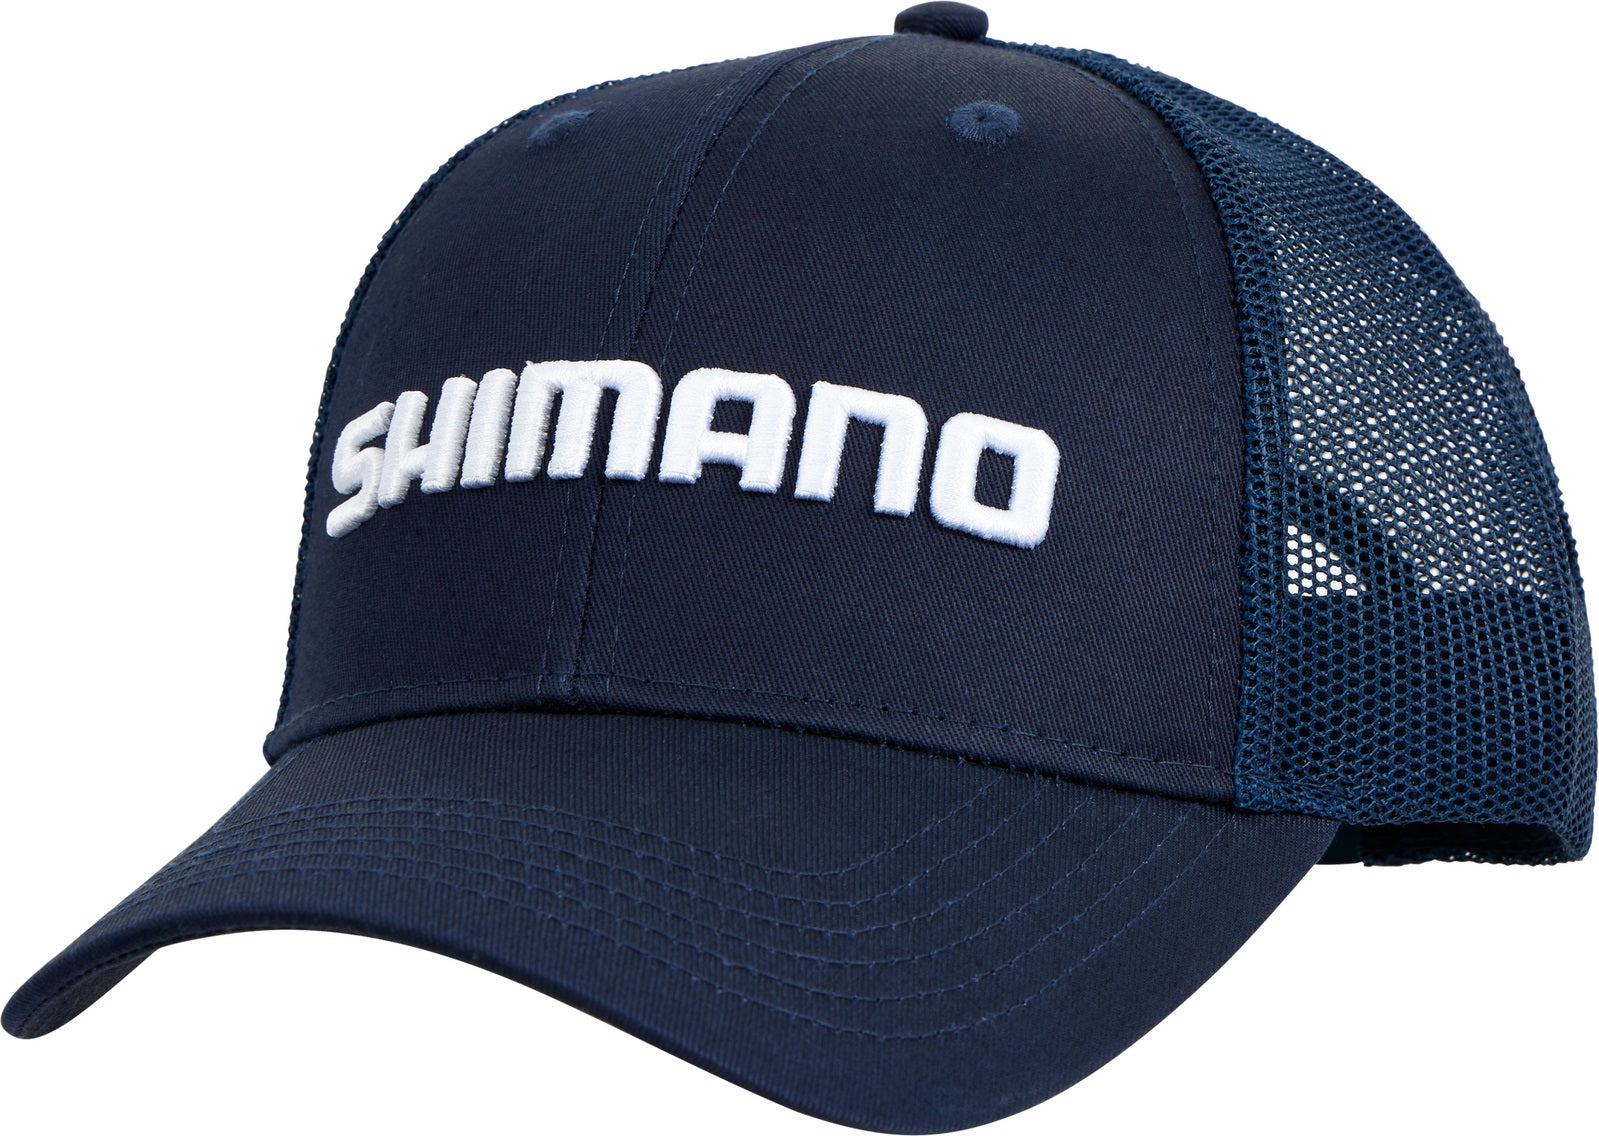 Shimano Corporate Trucker Navy Cap 23